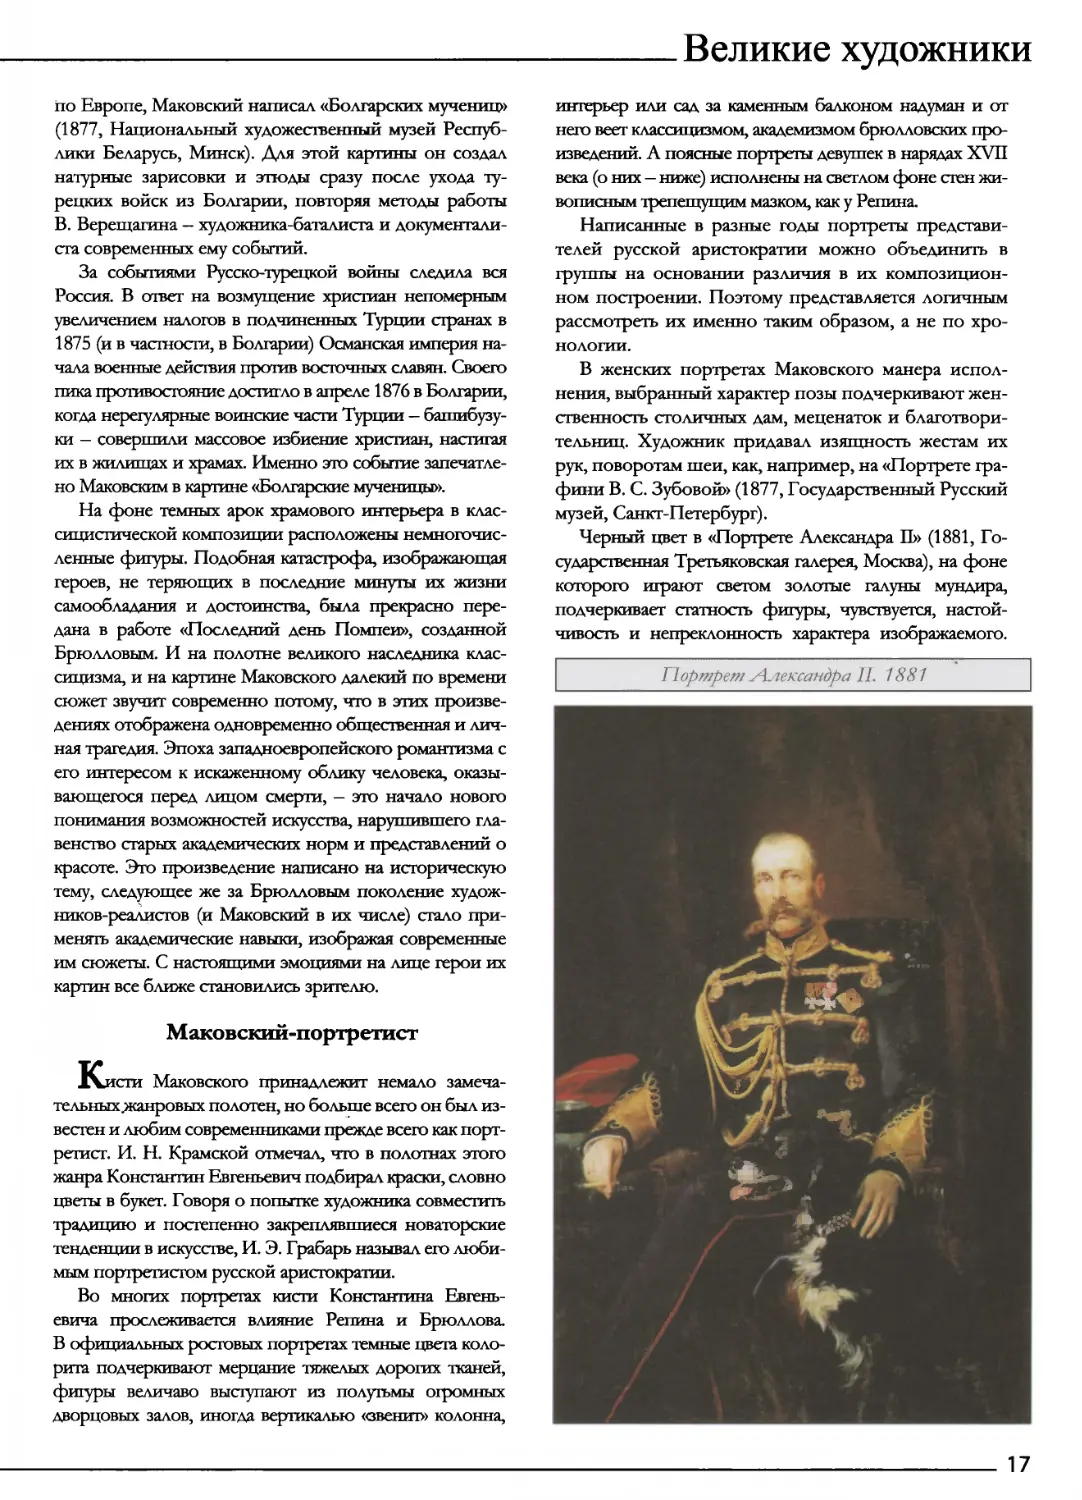 Маковский-портретист
Прортрет Александара II. 1881